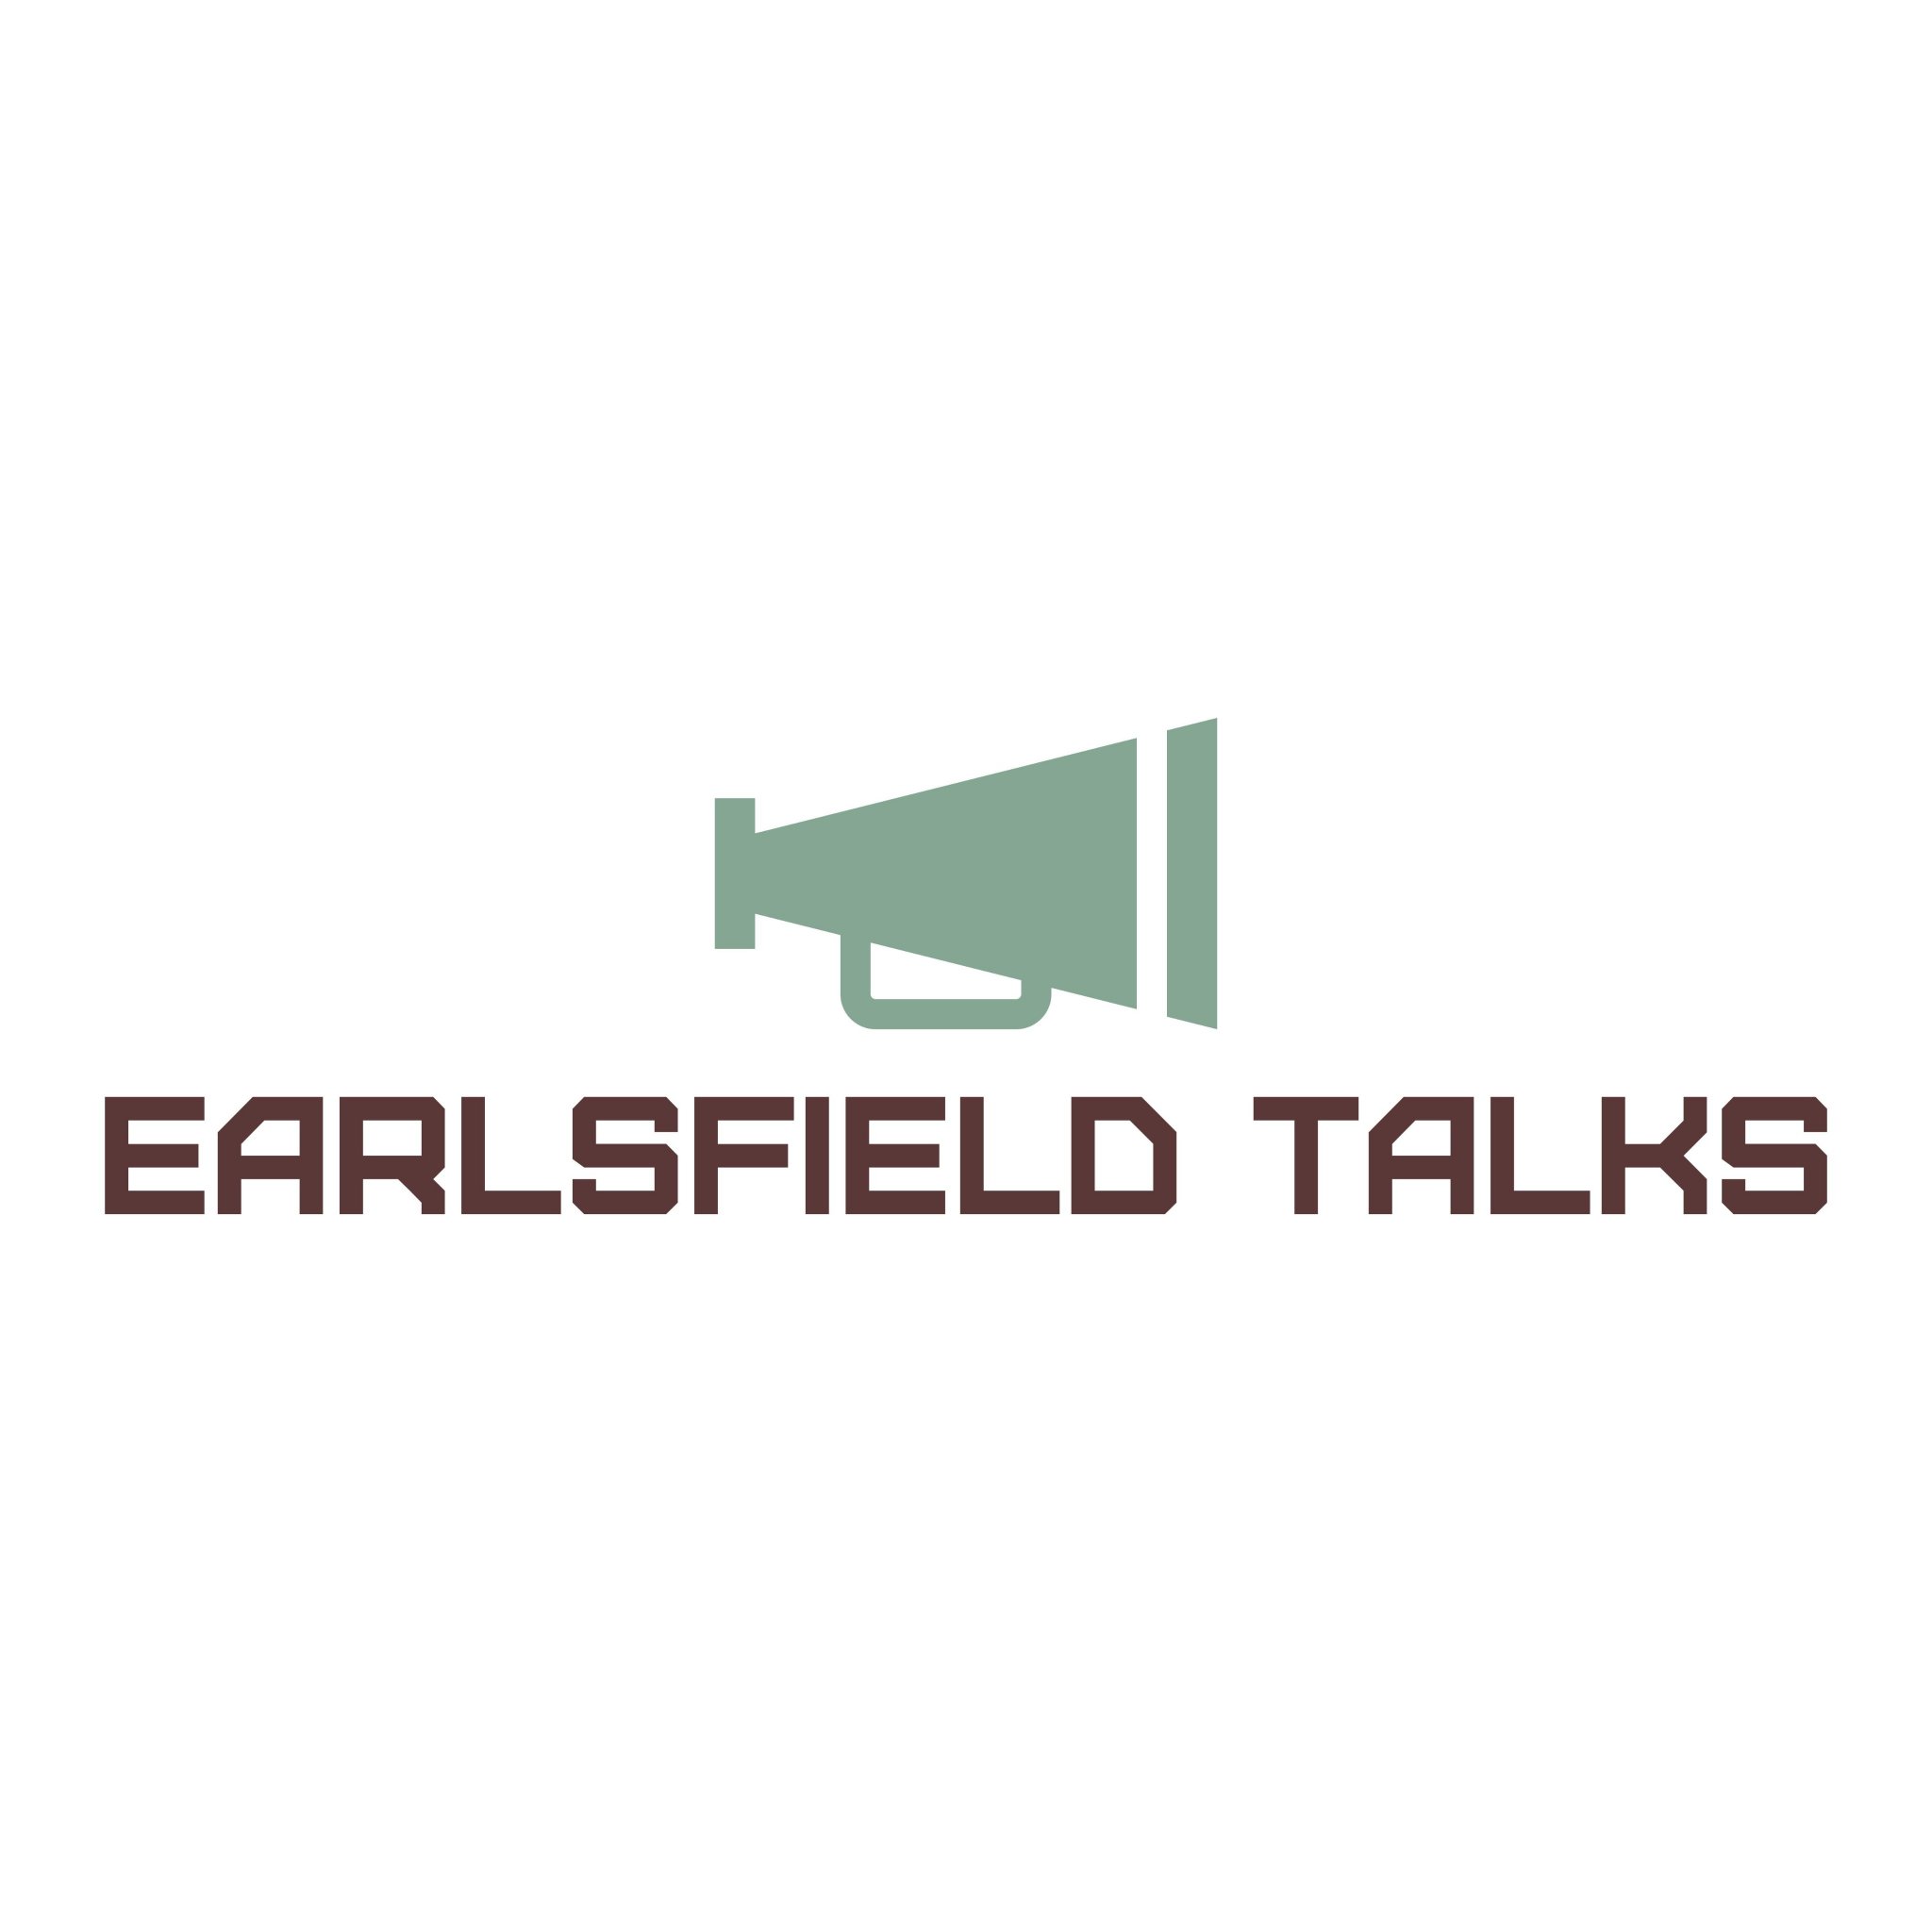 Earlsfield Talks